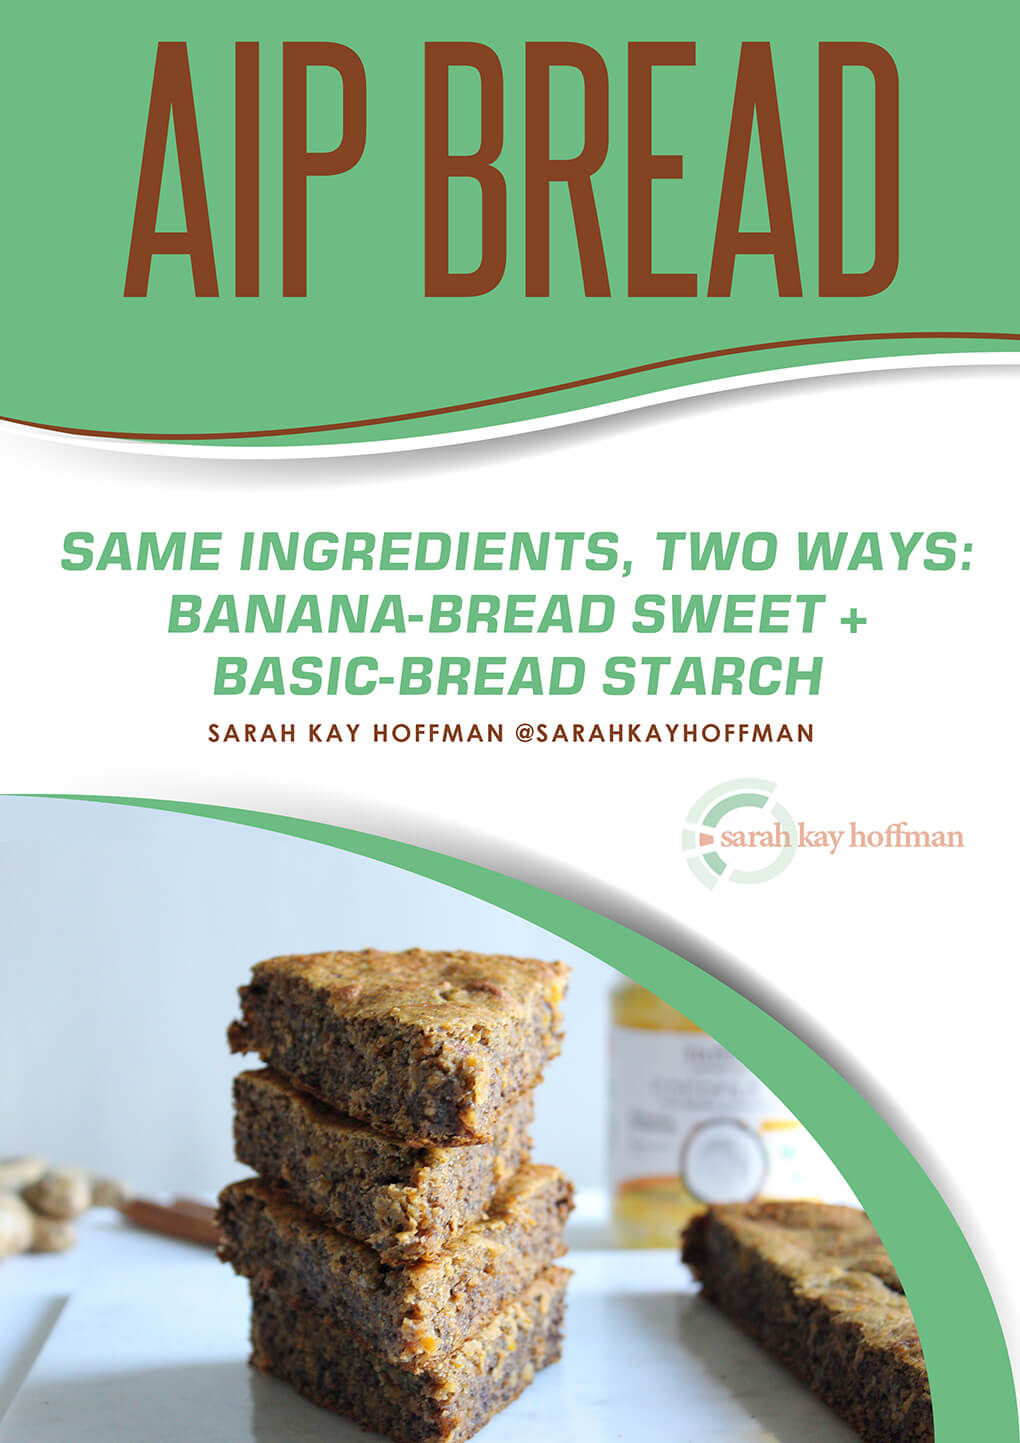 AIP Bread Recipe e-book via sarahkayhoffman.com